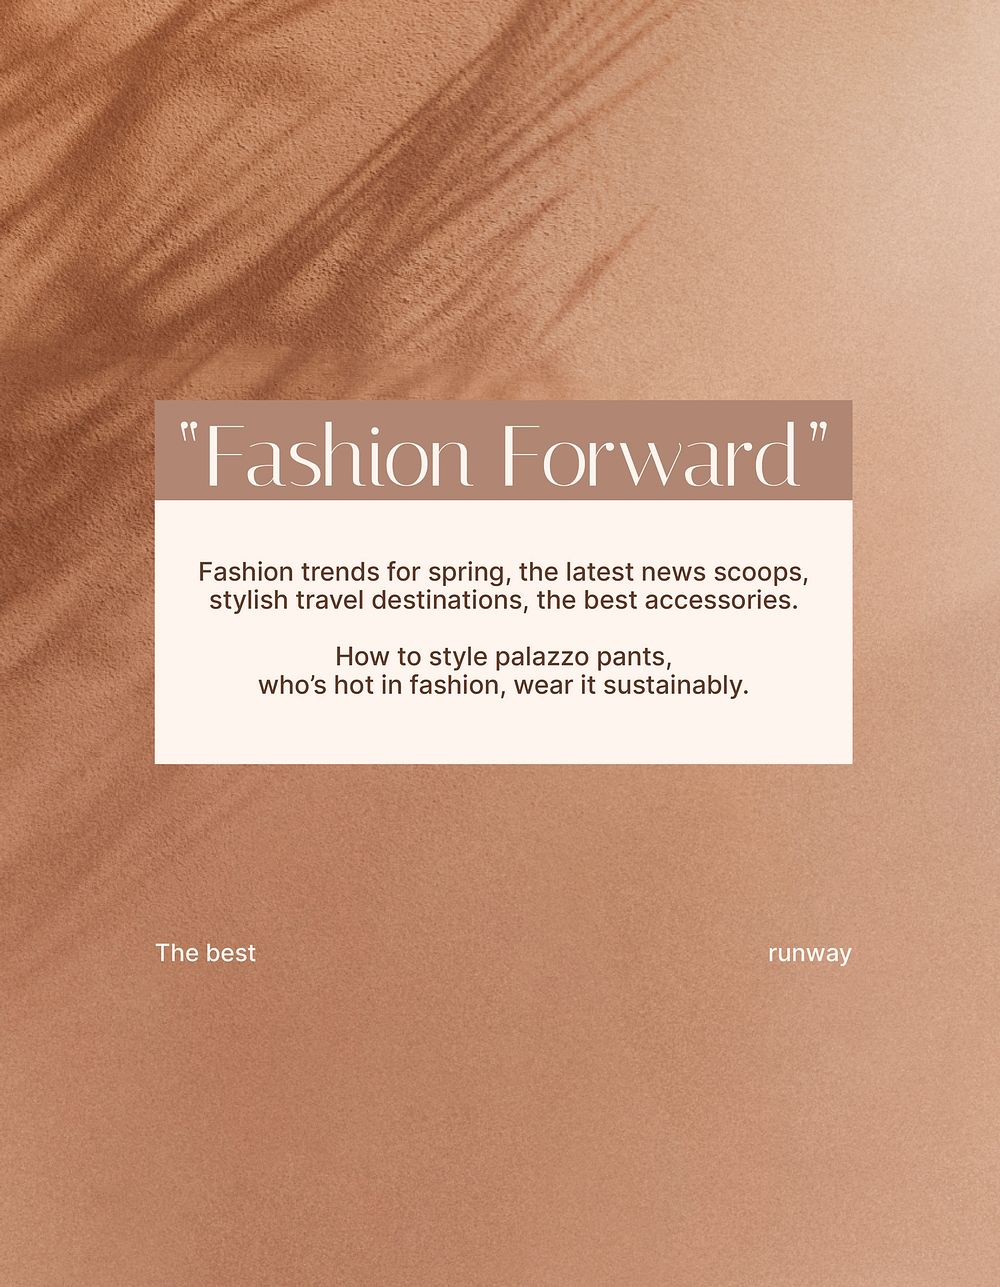 Fashion forward flyer editable template, shadow aesthetic psd